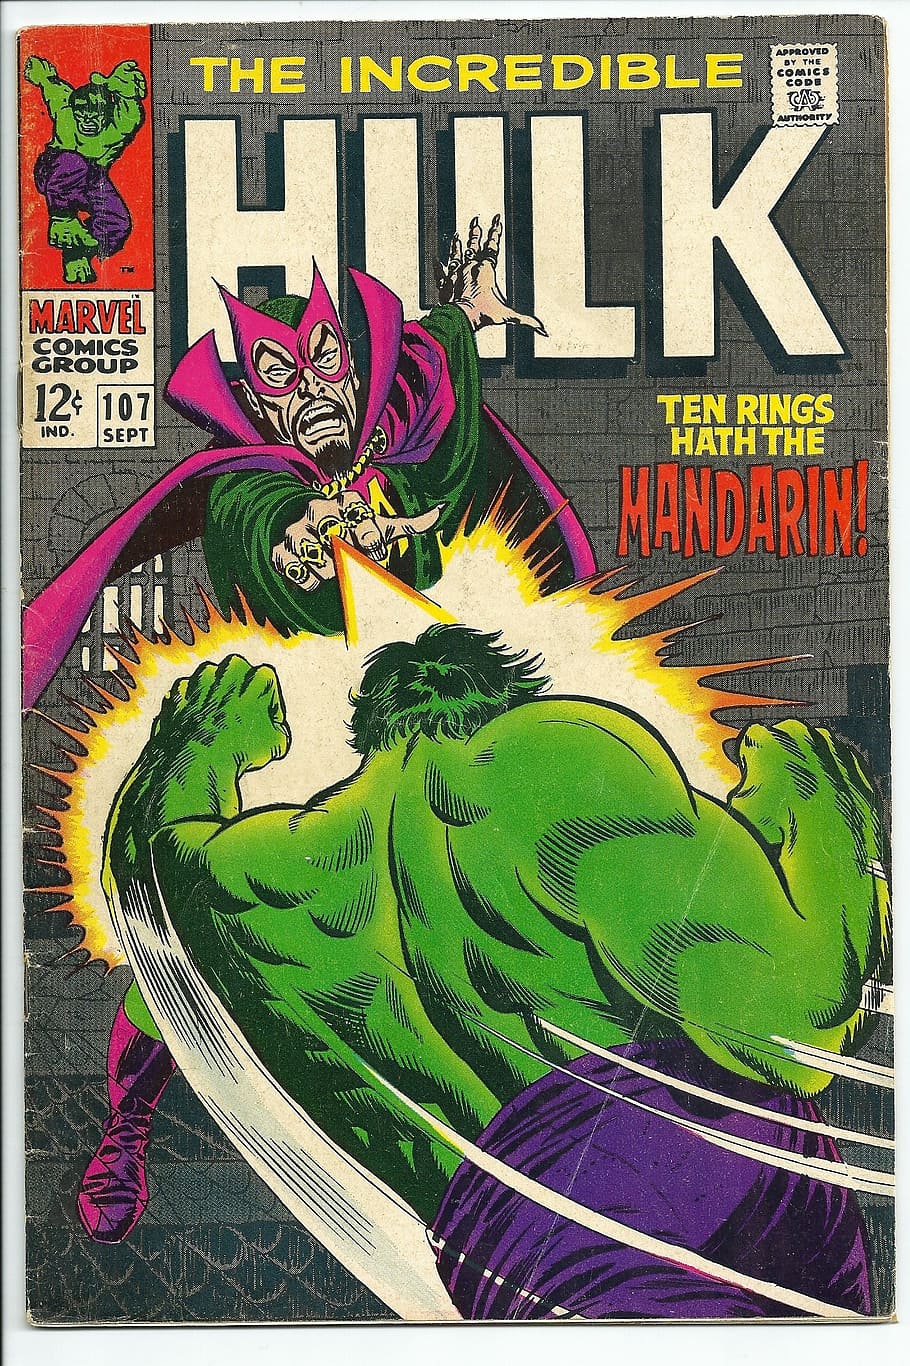 increíble, Hulk, cómic, libro, The Hulk, vintage, arte, ilustración, retro, imagen